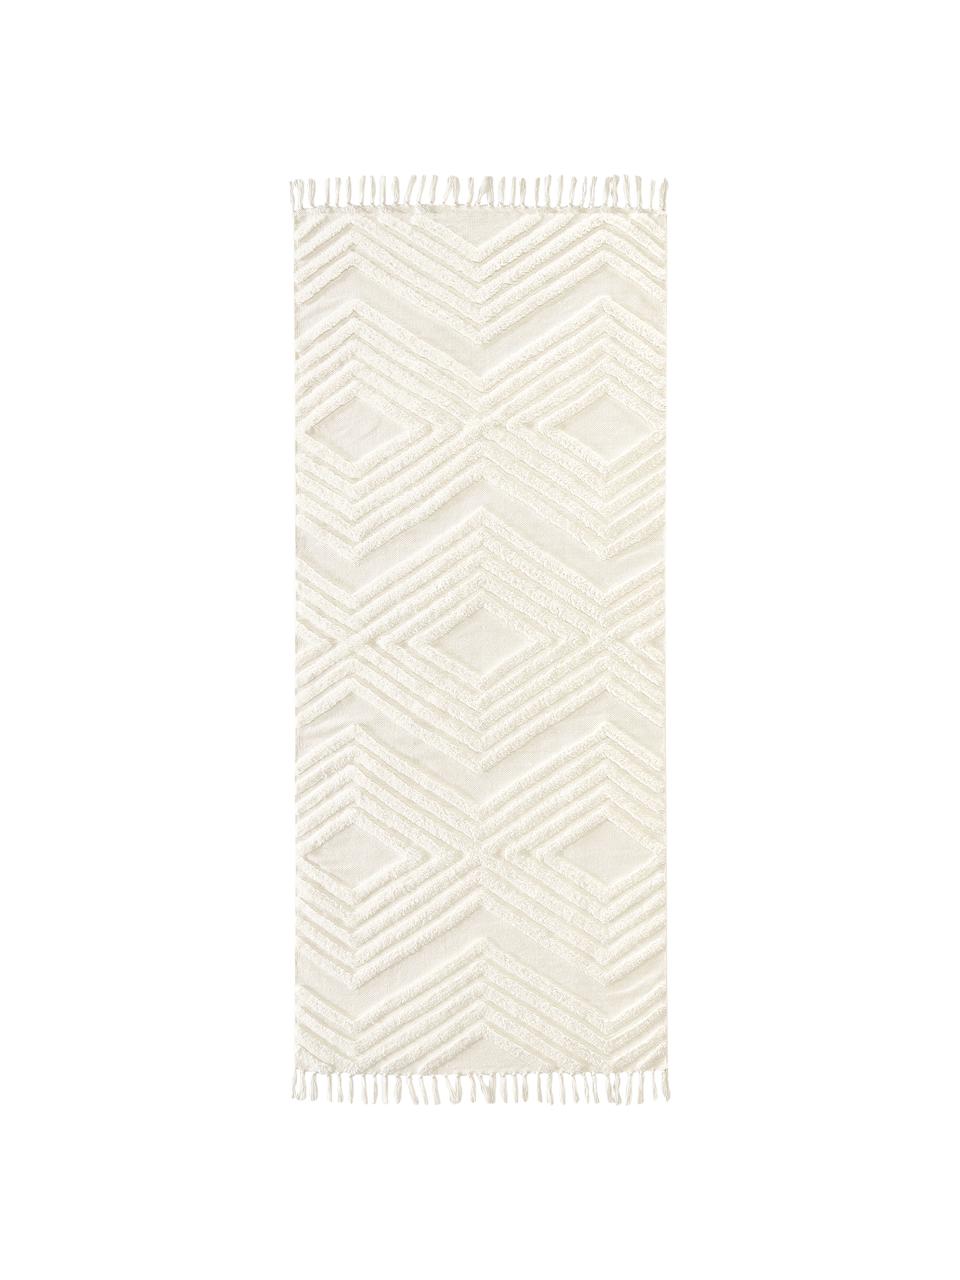 Tapis de couloir blanc crème en coton tissé main Ziggy, 100 % coton, Blanc crème, larg. 80 x long. 250 cm